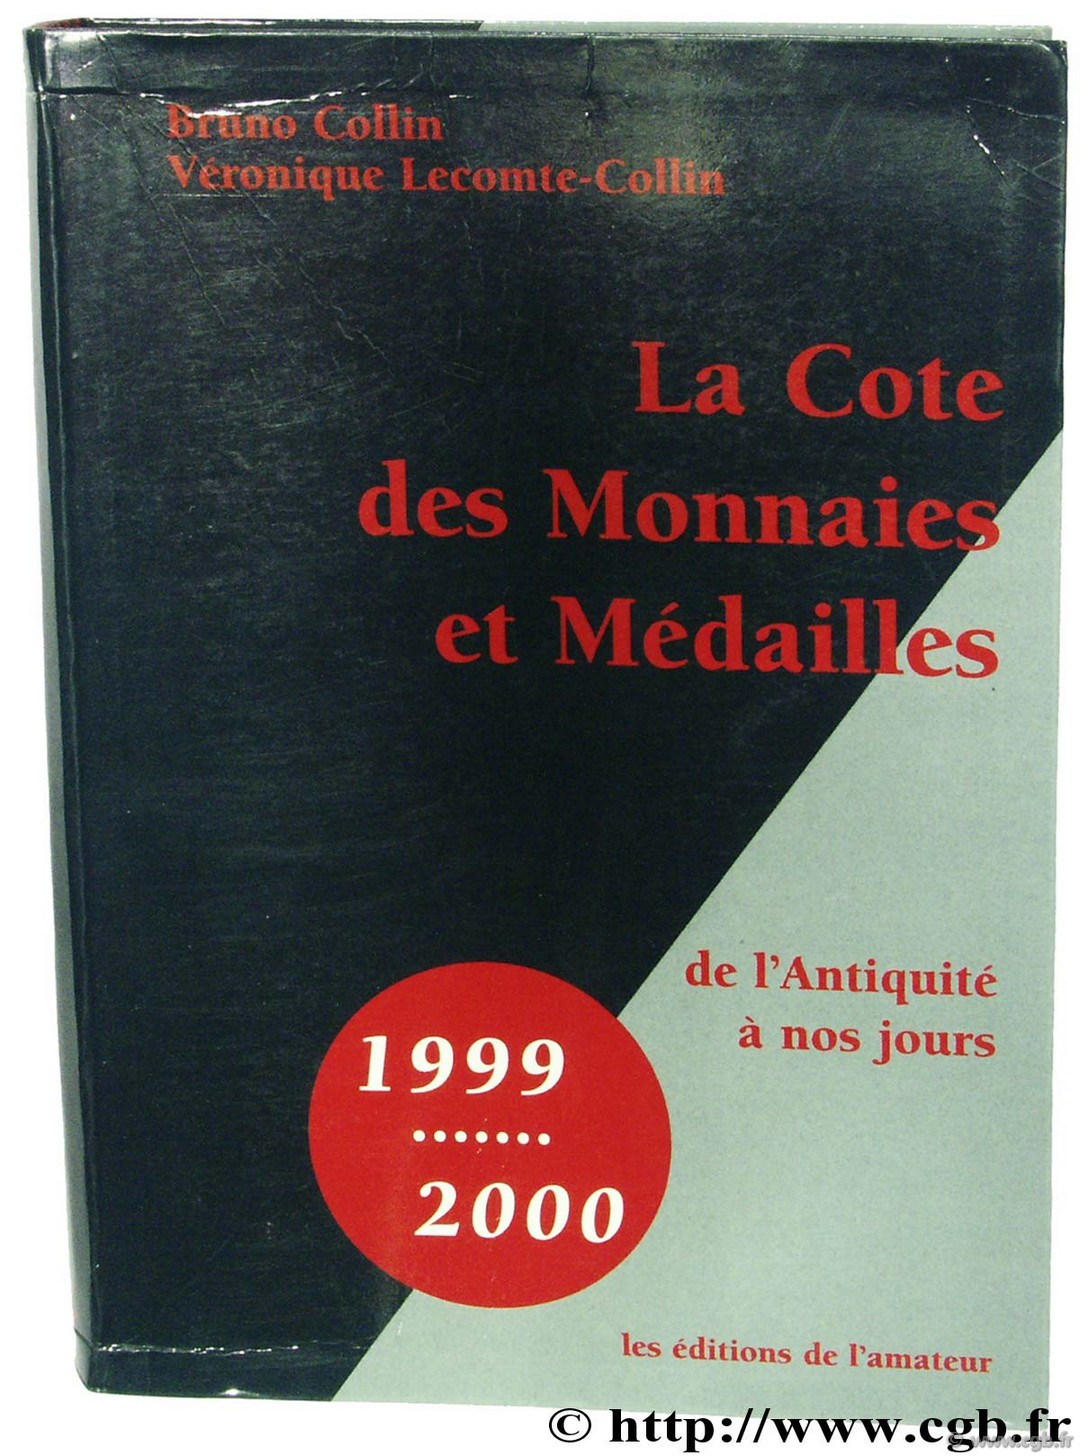 La cote des monnaies et médailles de l Antiquité à nos jours - 1999-2000 COLLIN B., LECOMTE-COLLIN V.